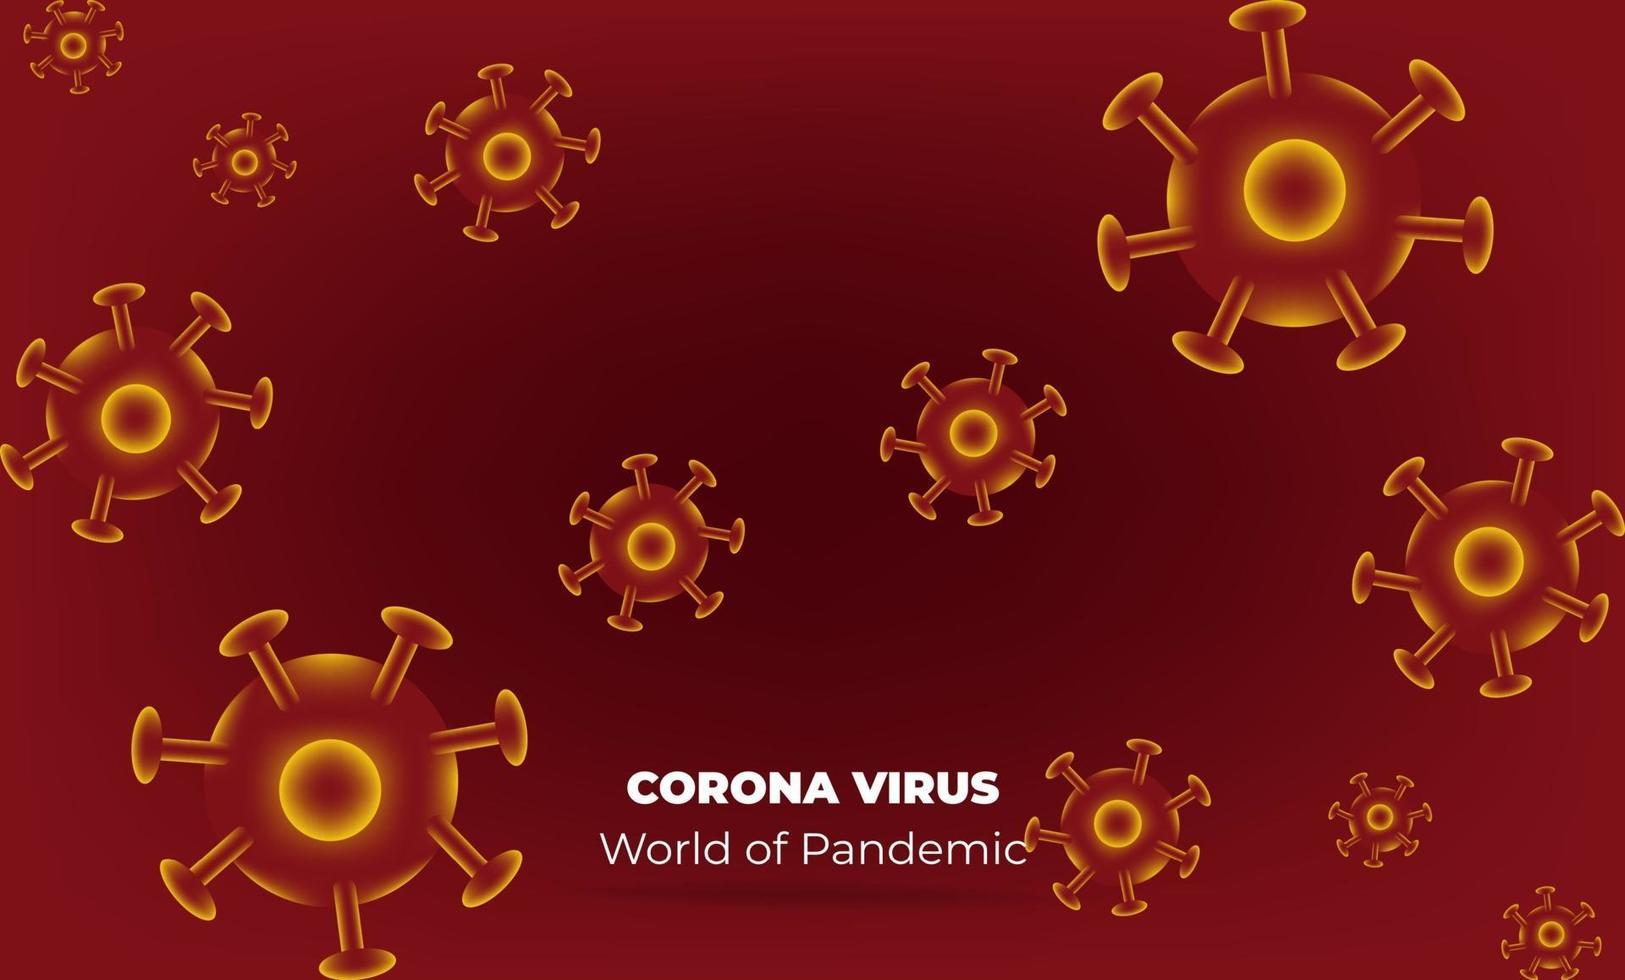 virus corona à wuhan. vecteurs corona de virus. fond rouge. illustration vectorielle vecteur